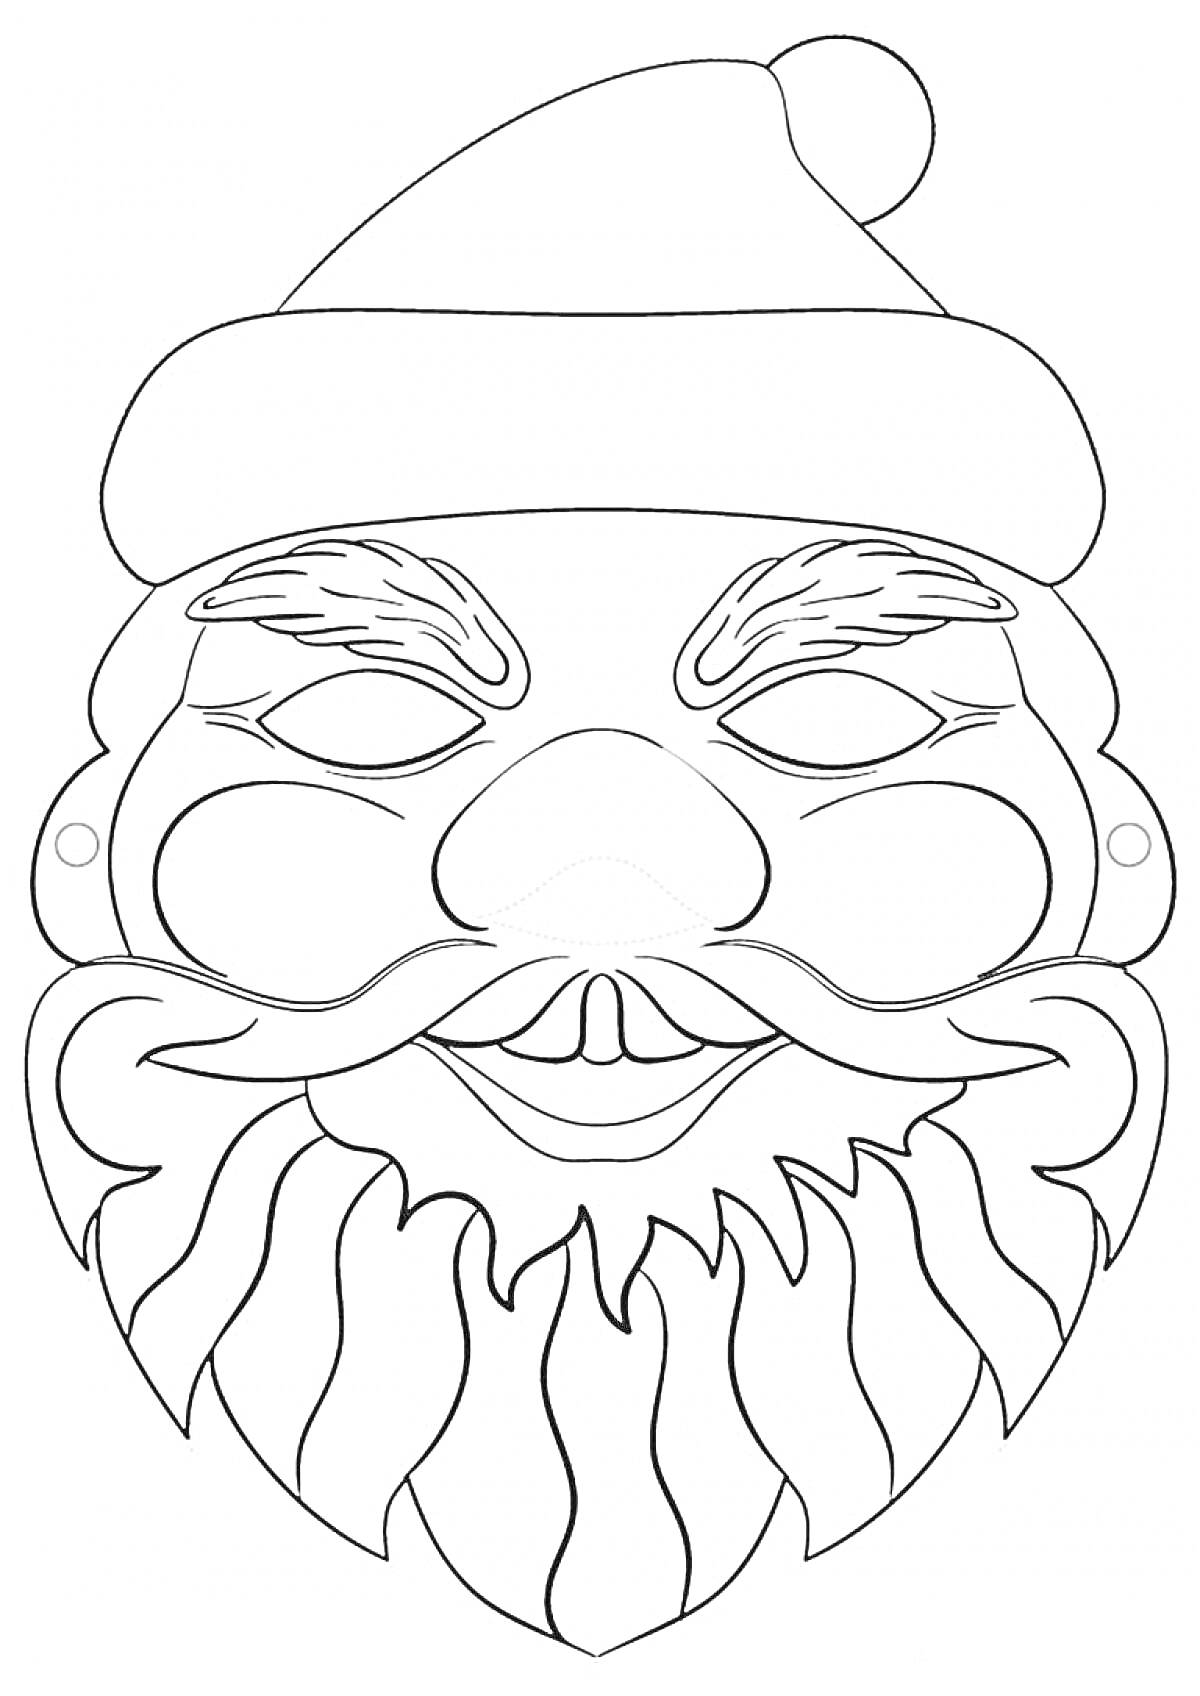 Раскраска Маска Деда Мороза с бородой, усами и шапкой